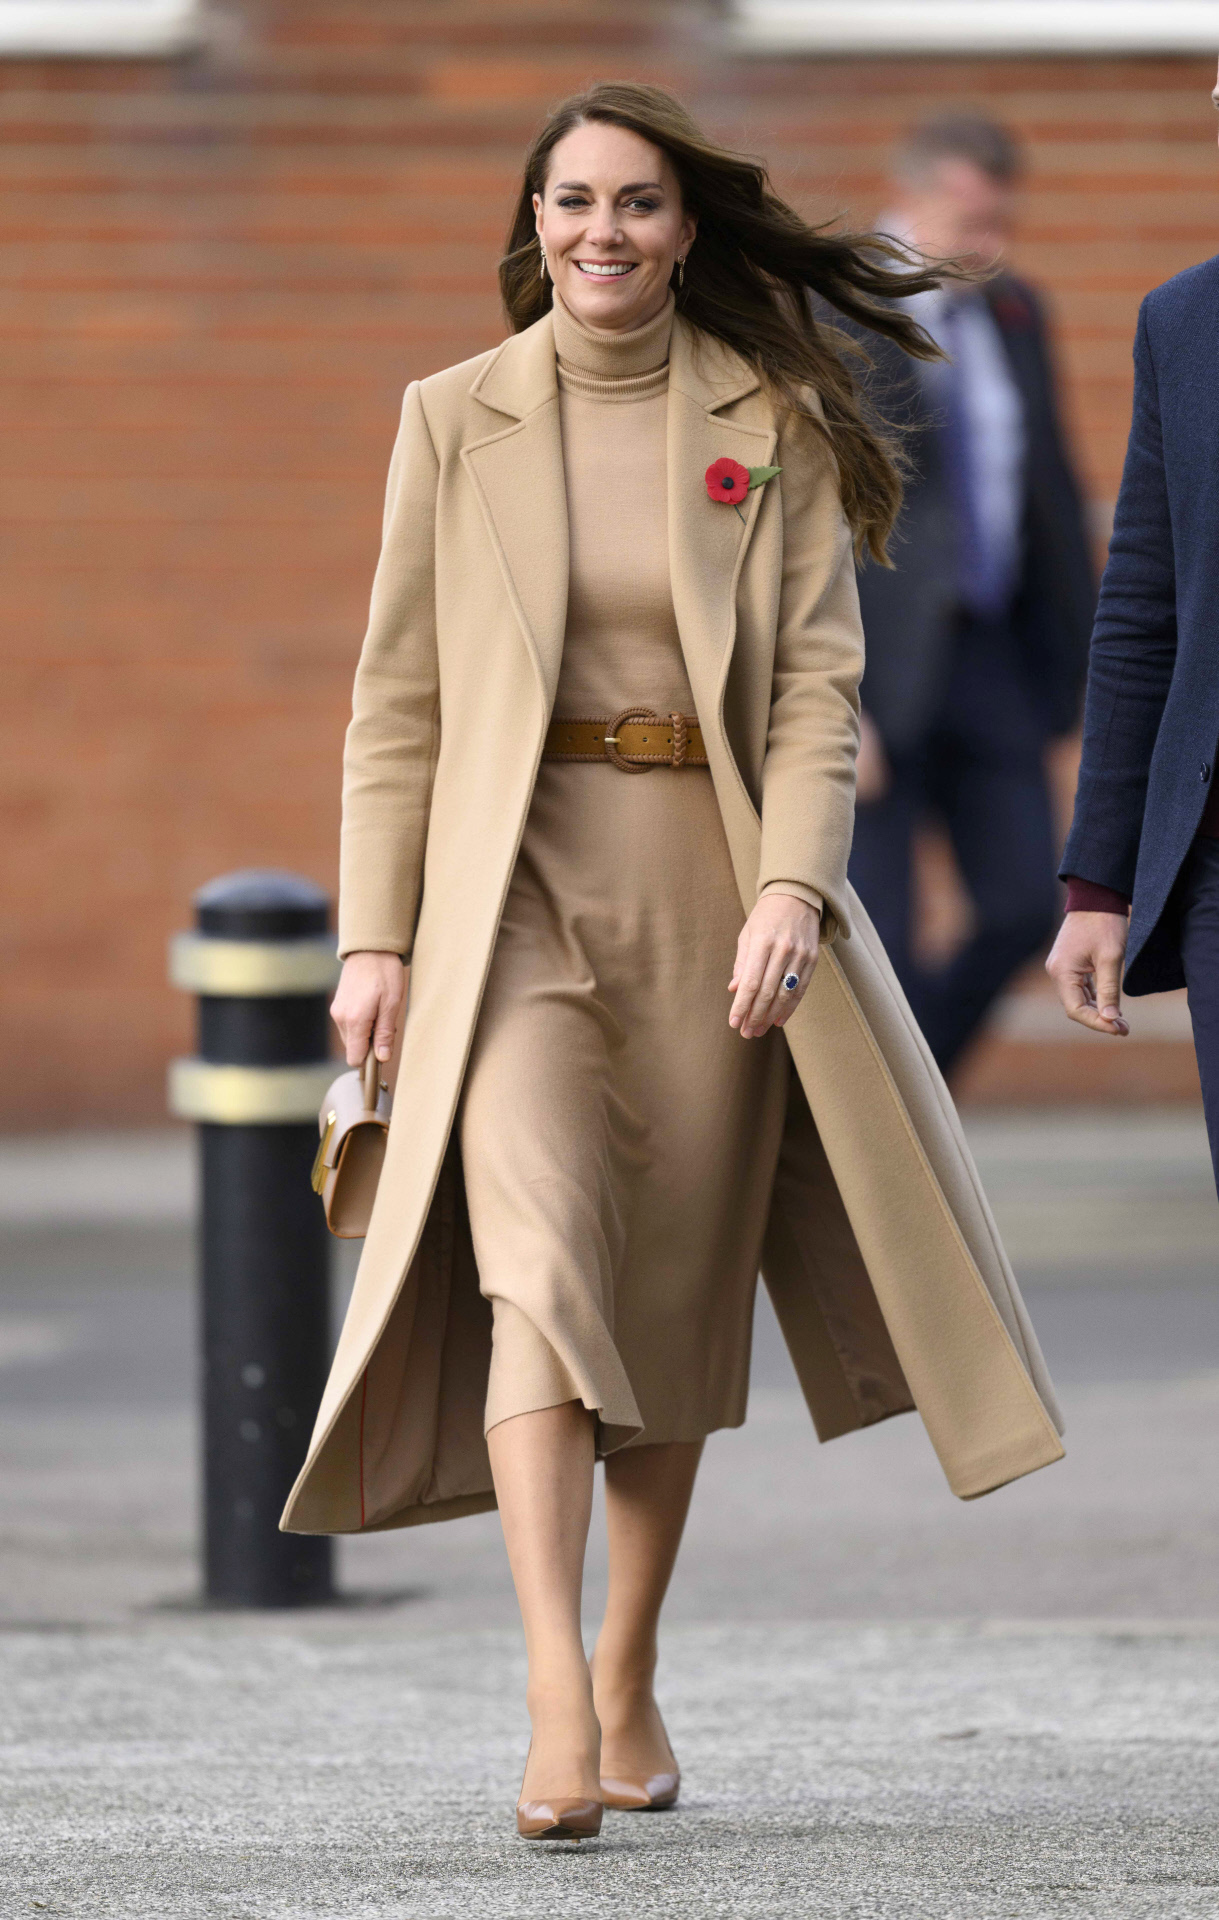 El abrigo favorito de Kate Middleton, clásico y color camel.